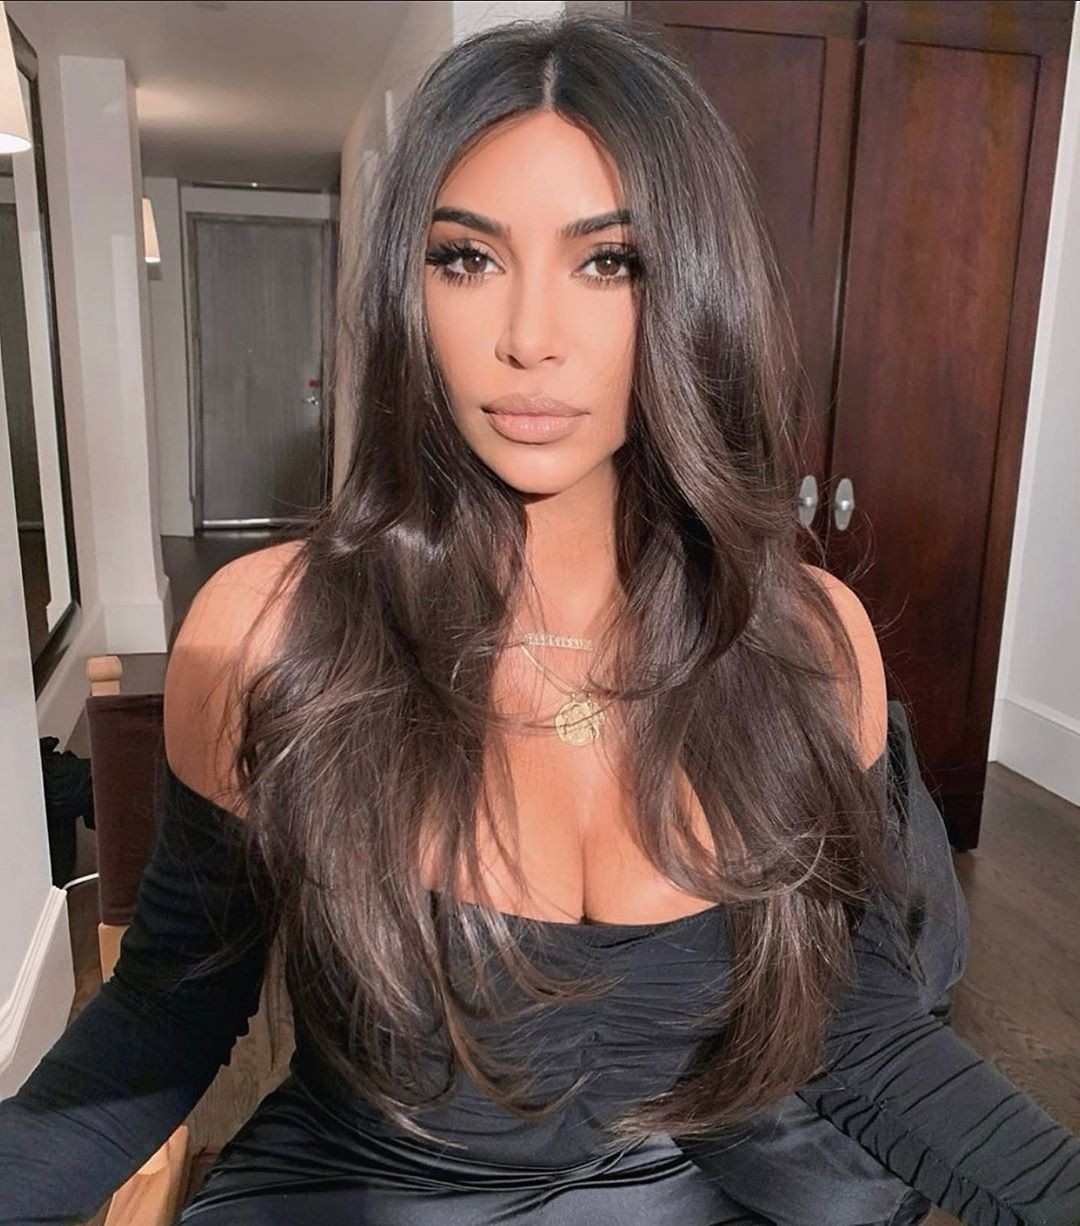 Kim Kardashian com cabelo comprido (Foto: Reprodução Instagram @kimkardashian)